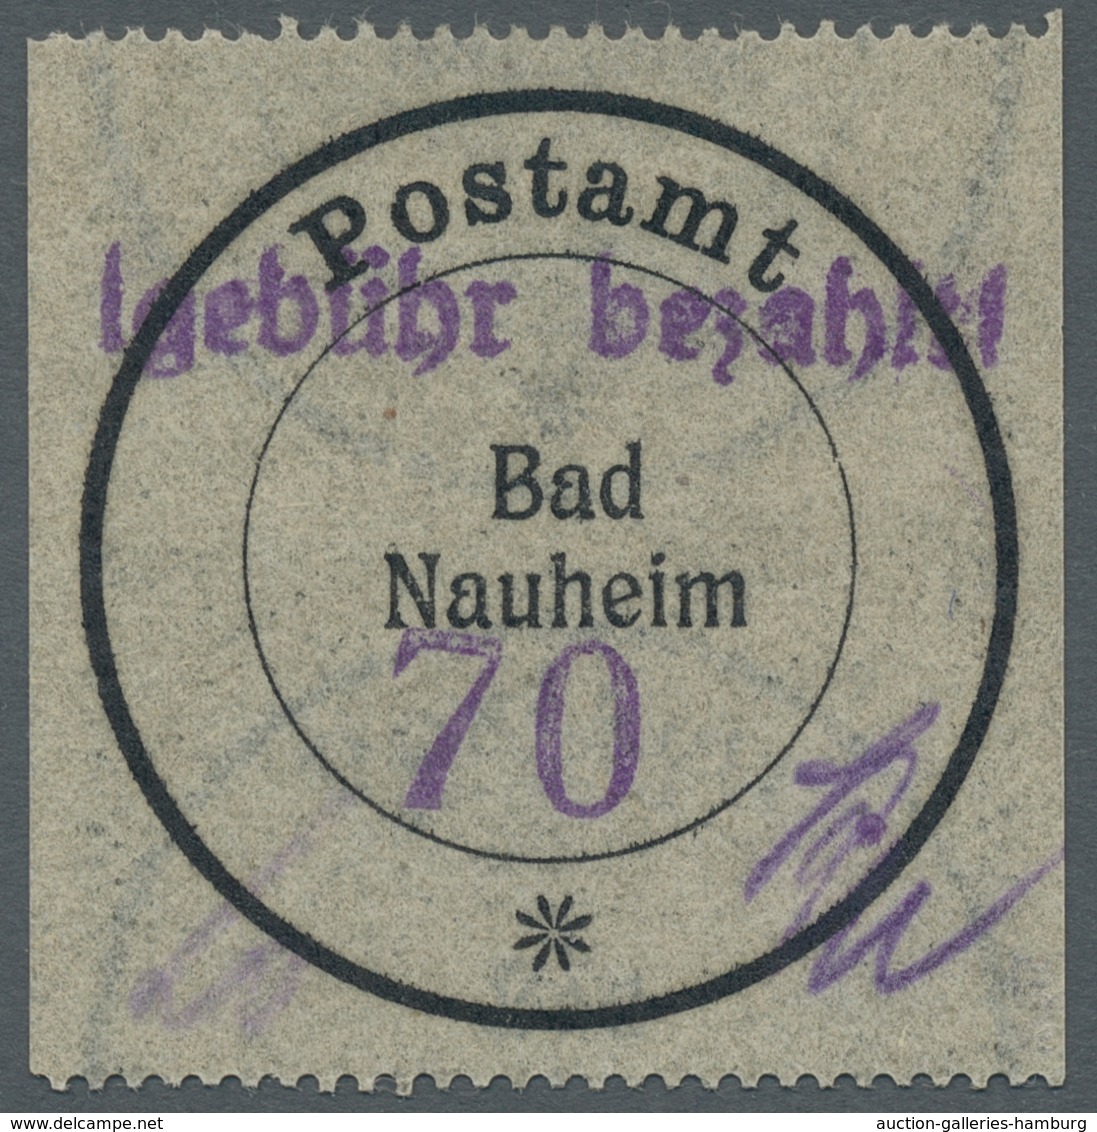 Deutsche Lokalausgaben ab 1945: 1945/1946, umfang- und inhaltsreiche postfrische (etwas auch ungebra